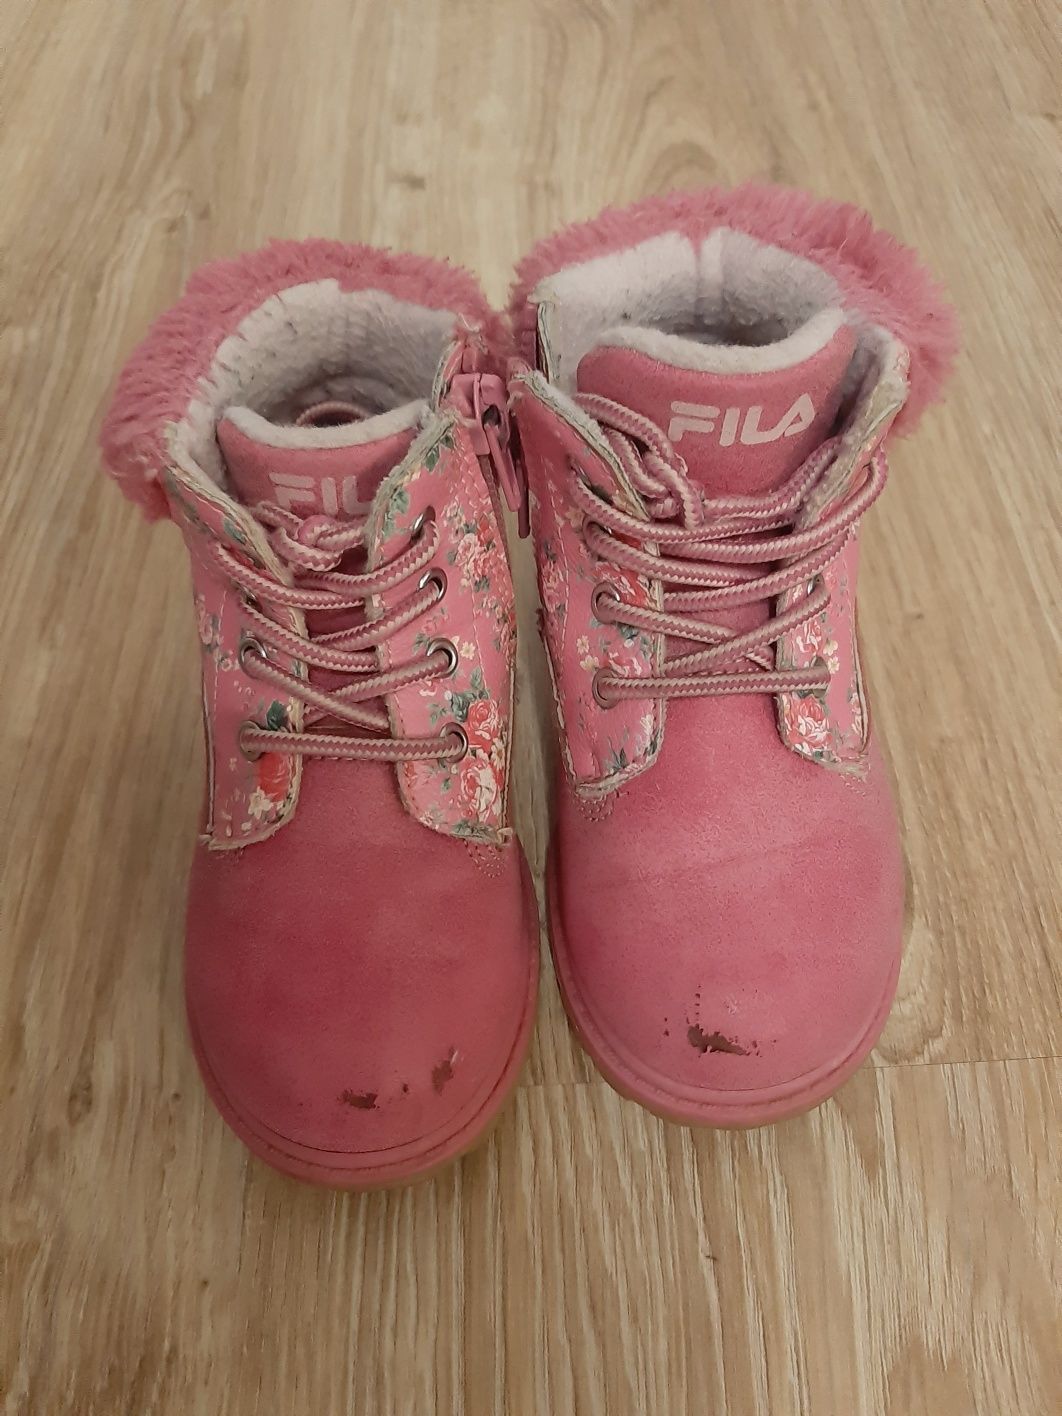 Buty zimowe fila dla dziewczynki rozmiar 23